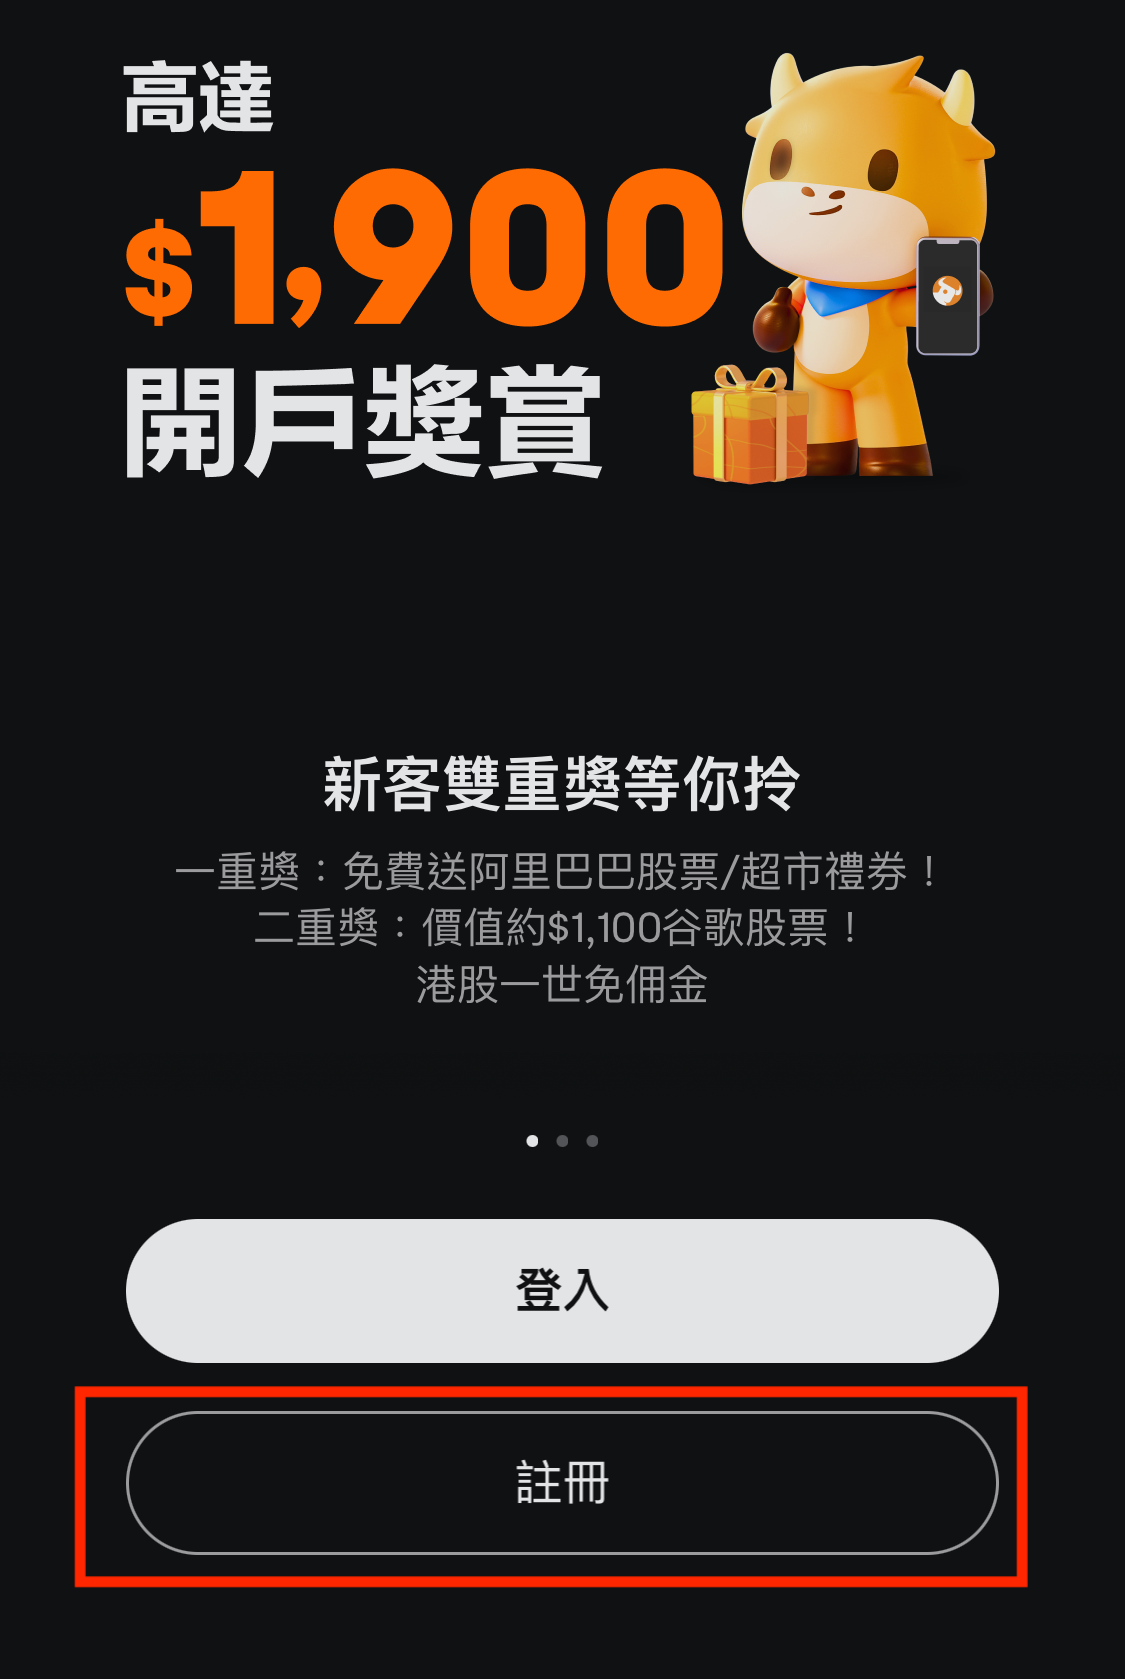 【富途牛牛開戶優惠】毋須交易，用指定邀請碼開戶賺HK$1,000 Apple Gift Card/超市禮券！學生都有份!